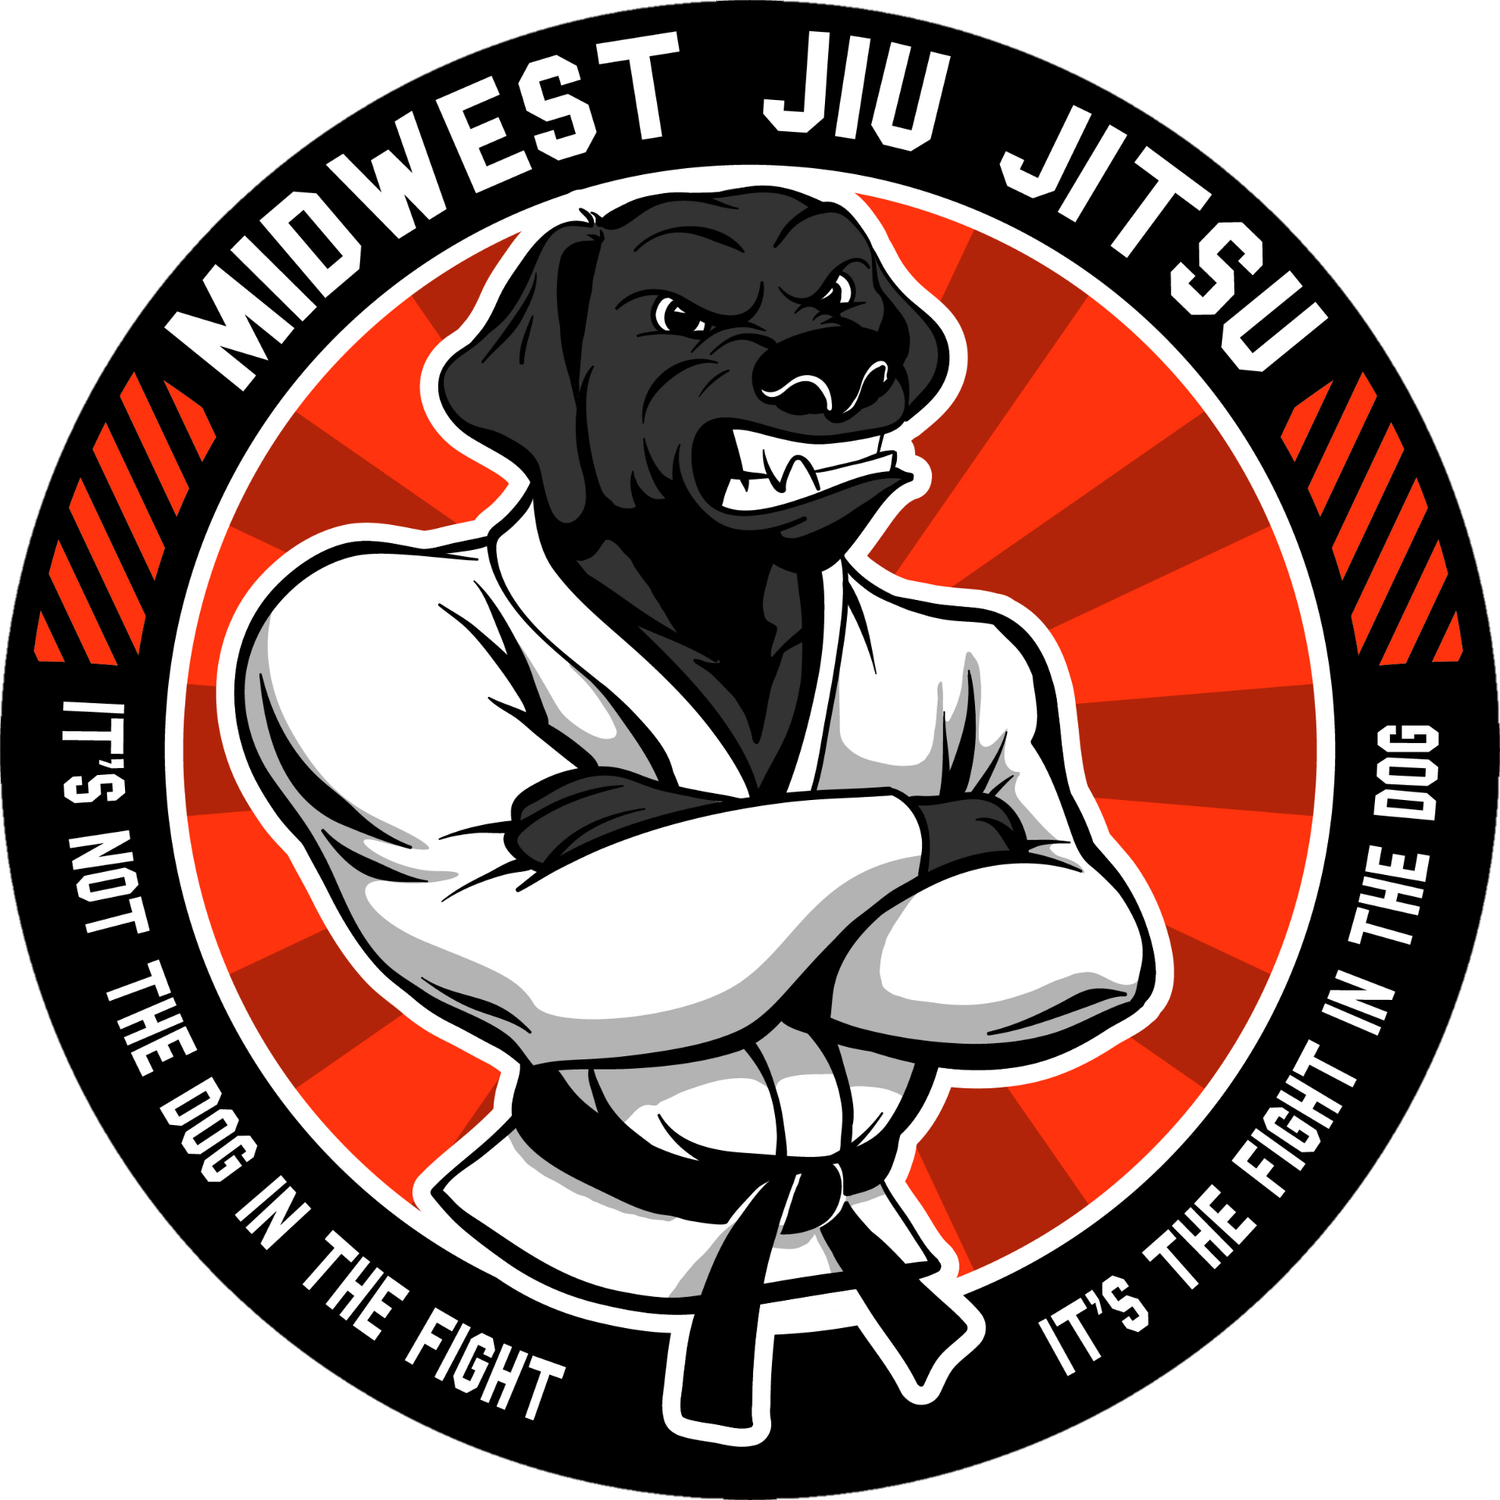 Midwest Jiu-Jitsu Academy